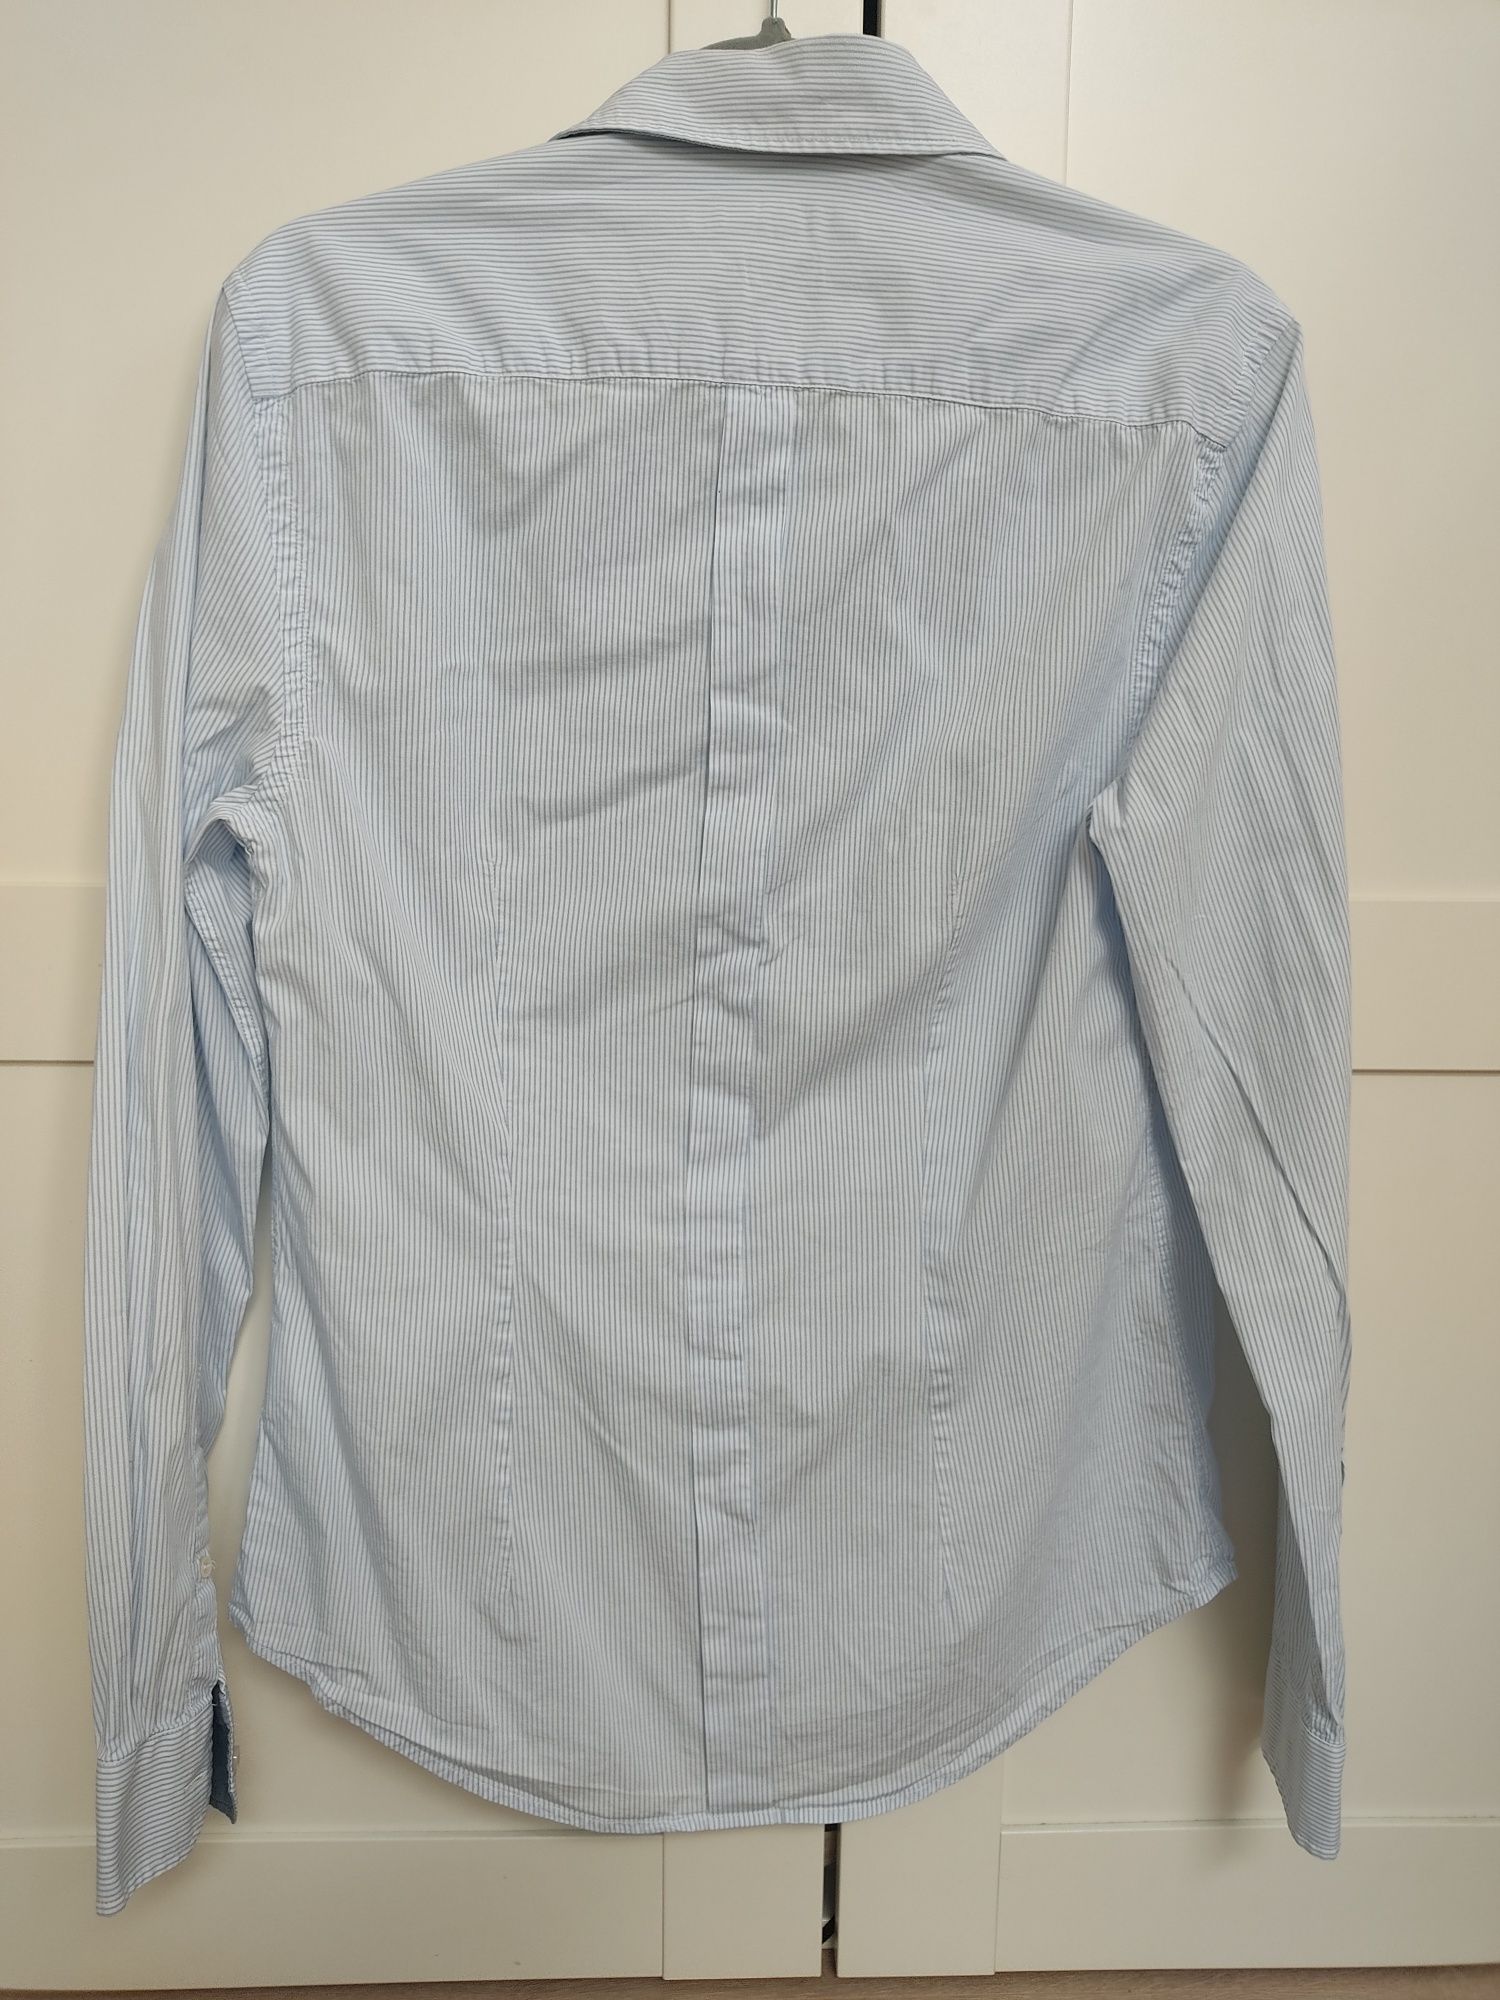 Koszula męska błękitna Trussardi Jeans slim fit 175/96a, 40